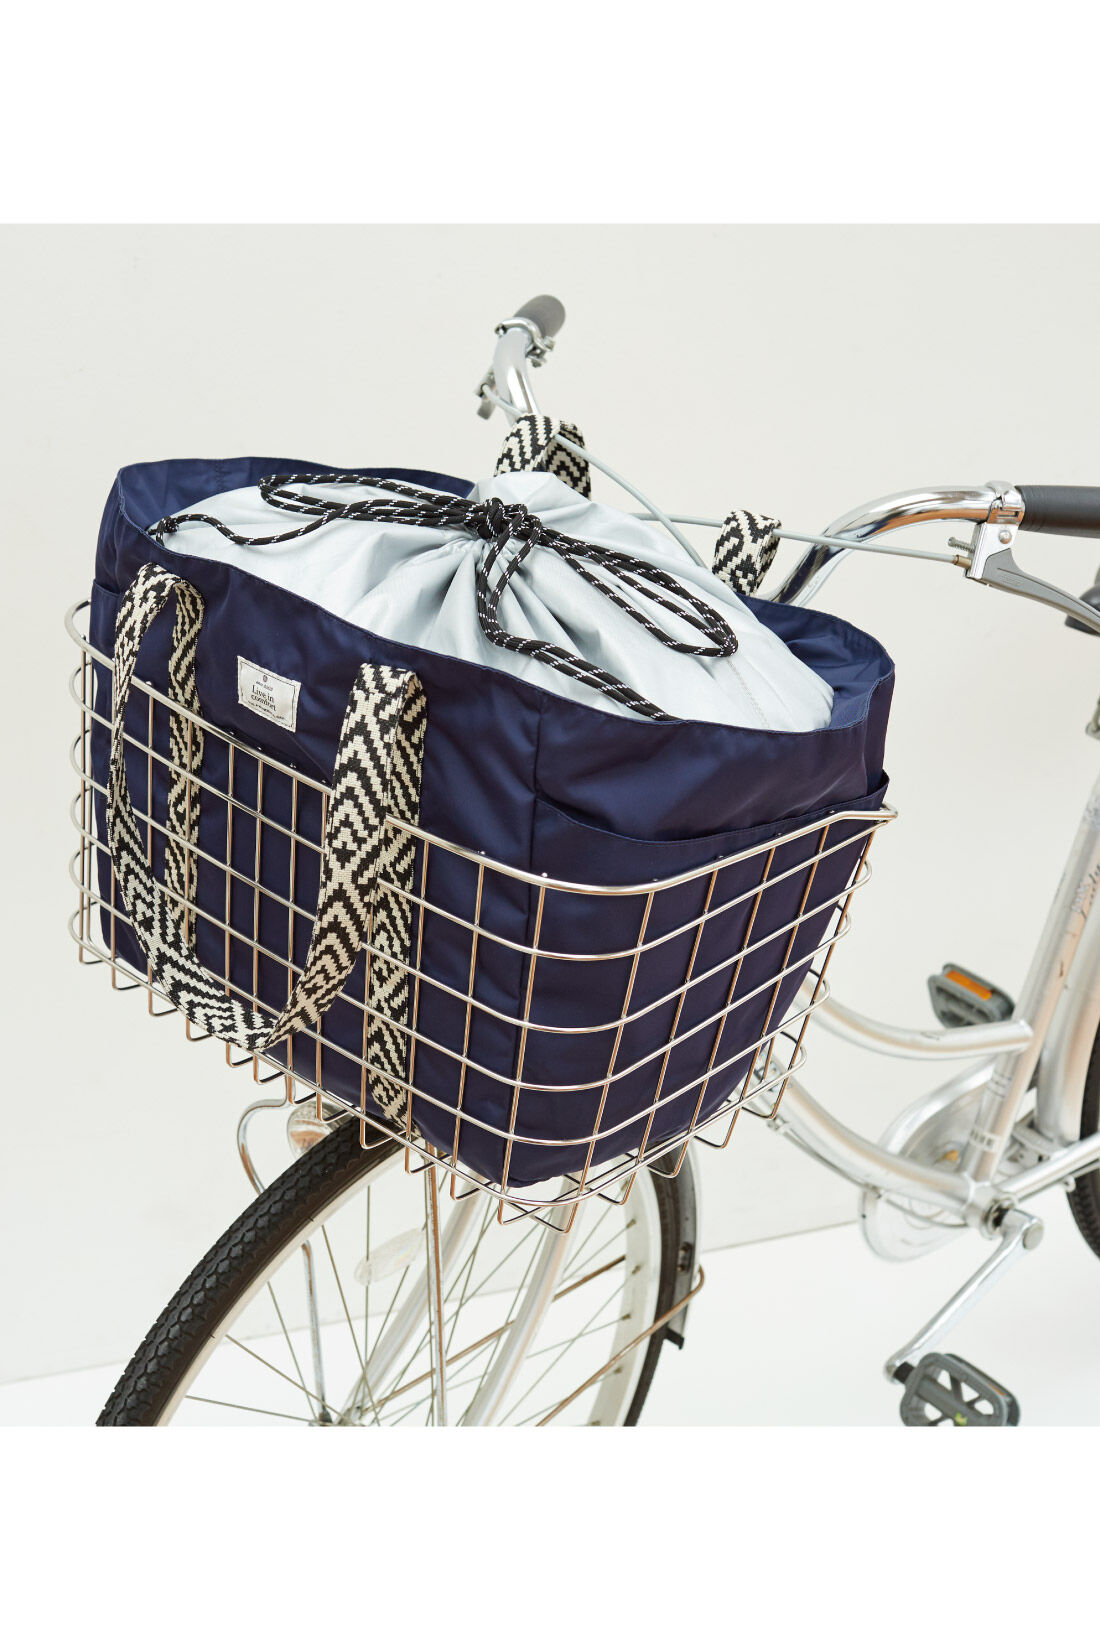 Live in  comfort|リブ イン コンフォート はまじとコラボ 保冷素材を使用したシックに持てる こだわりのレジかごトートバッグ〈ネイビー〉|自転車のかごにもすっぽり入る大きさ。